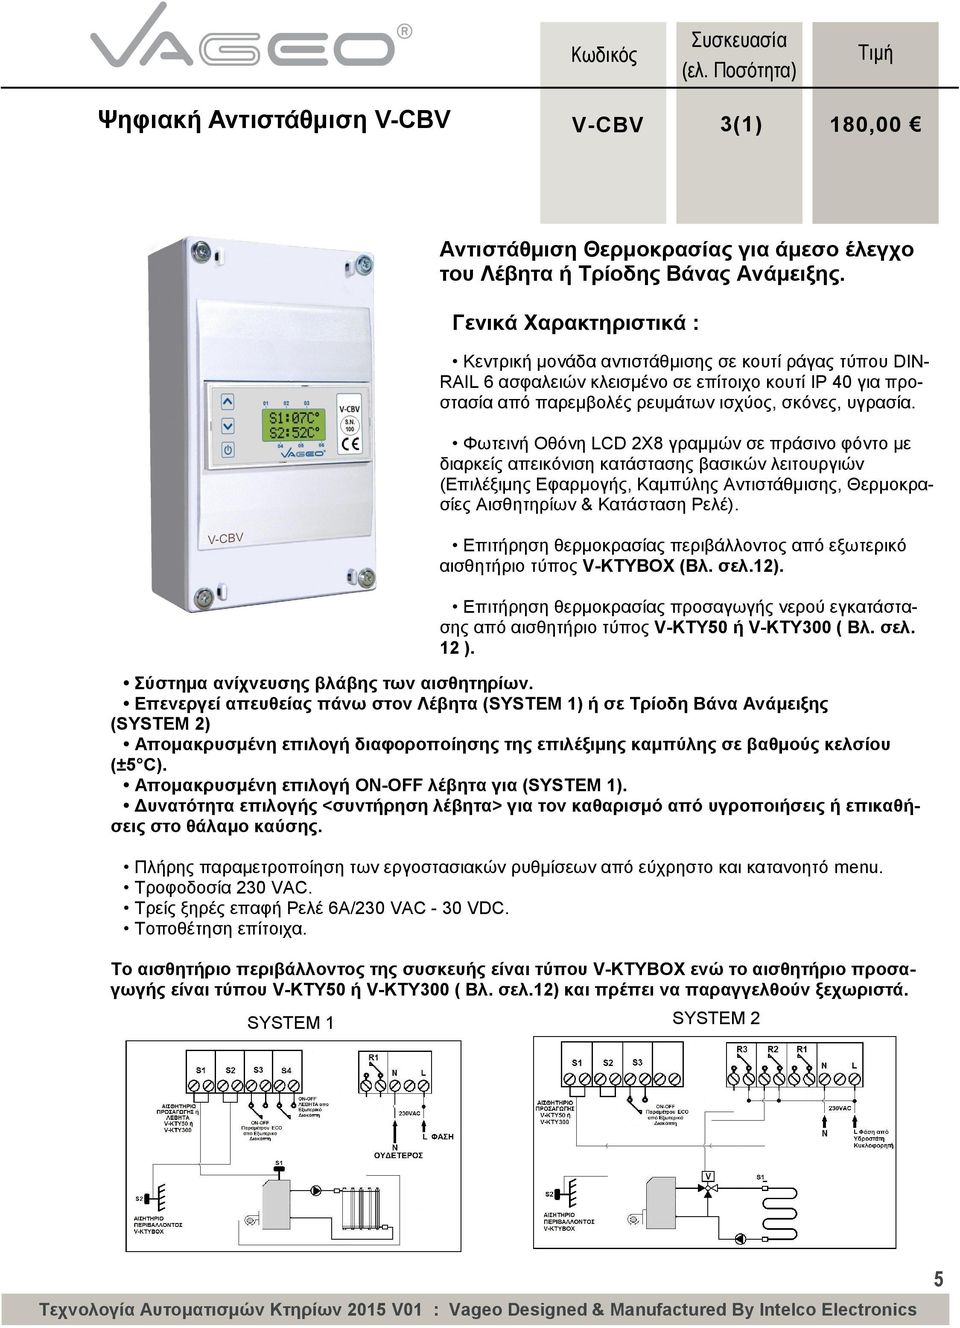 Φωτεινή Οθόνη LCD 2Χ8 γραμμών σε πράσινο φόντο με διαρκείς απεικόνιση κατάστασης βασικών λειτουργιών (Επιλέξιμης Εφαρμογής, Καμπύλης Αντιστάθμισης, Θερμοκρασίες Αισθητηρίων & Κατάσταση Ρελέ).